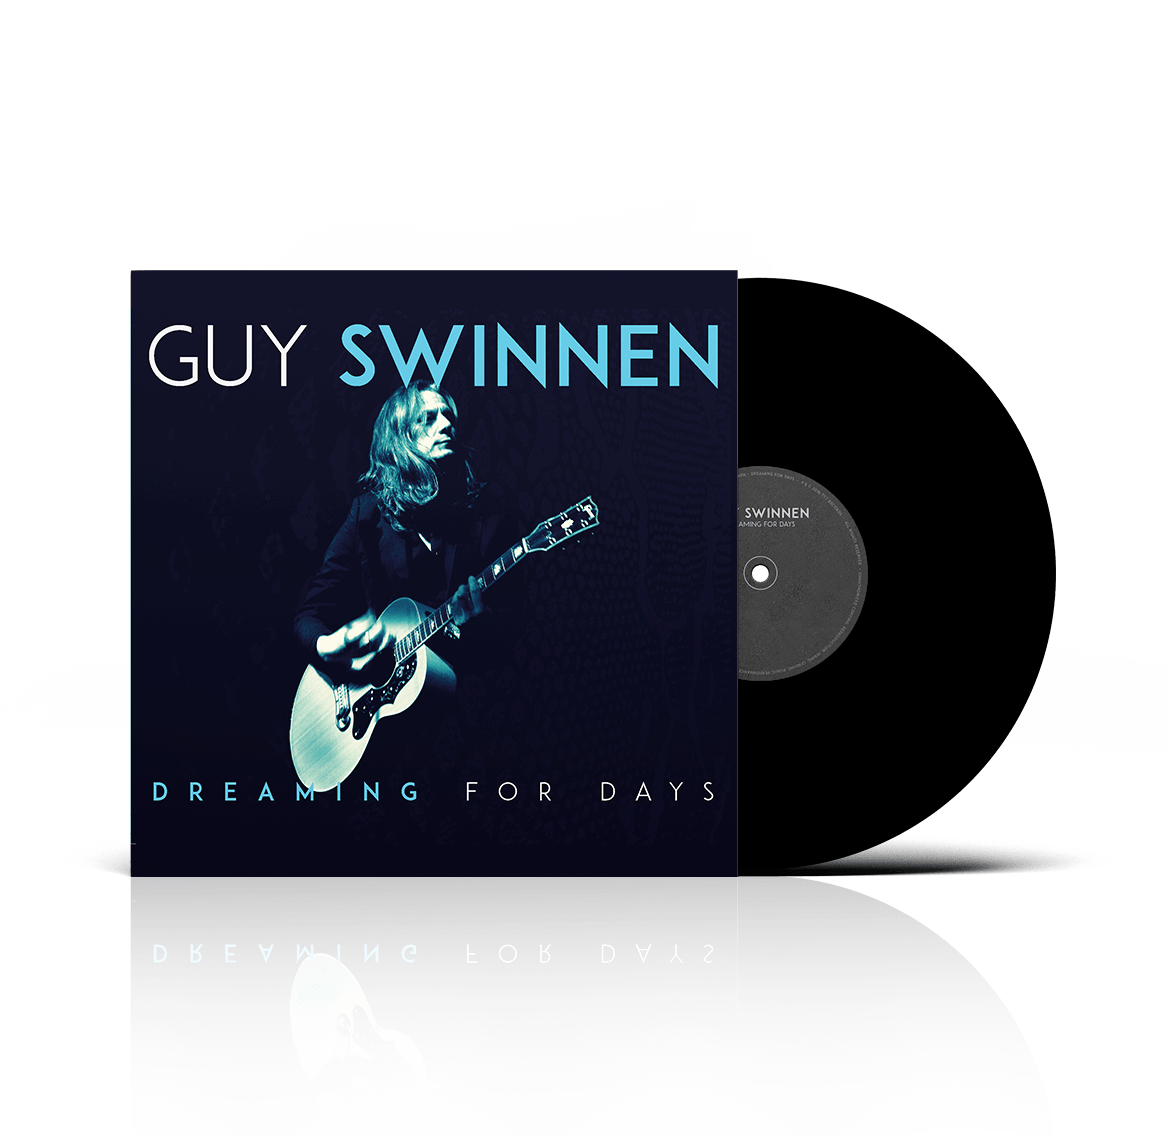 Guy Swinnen album cover - Dreaming for days